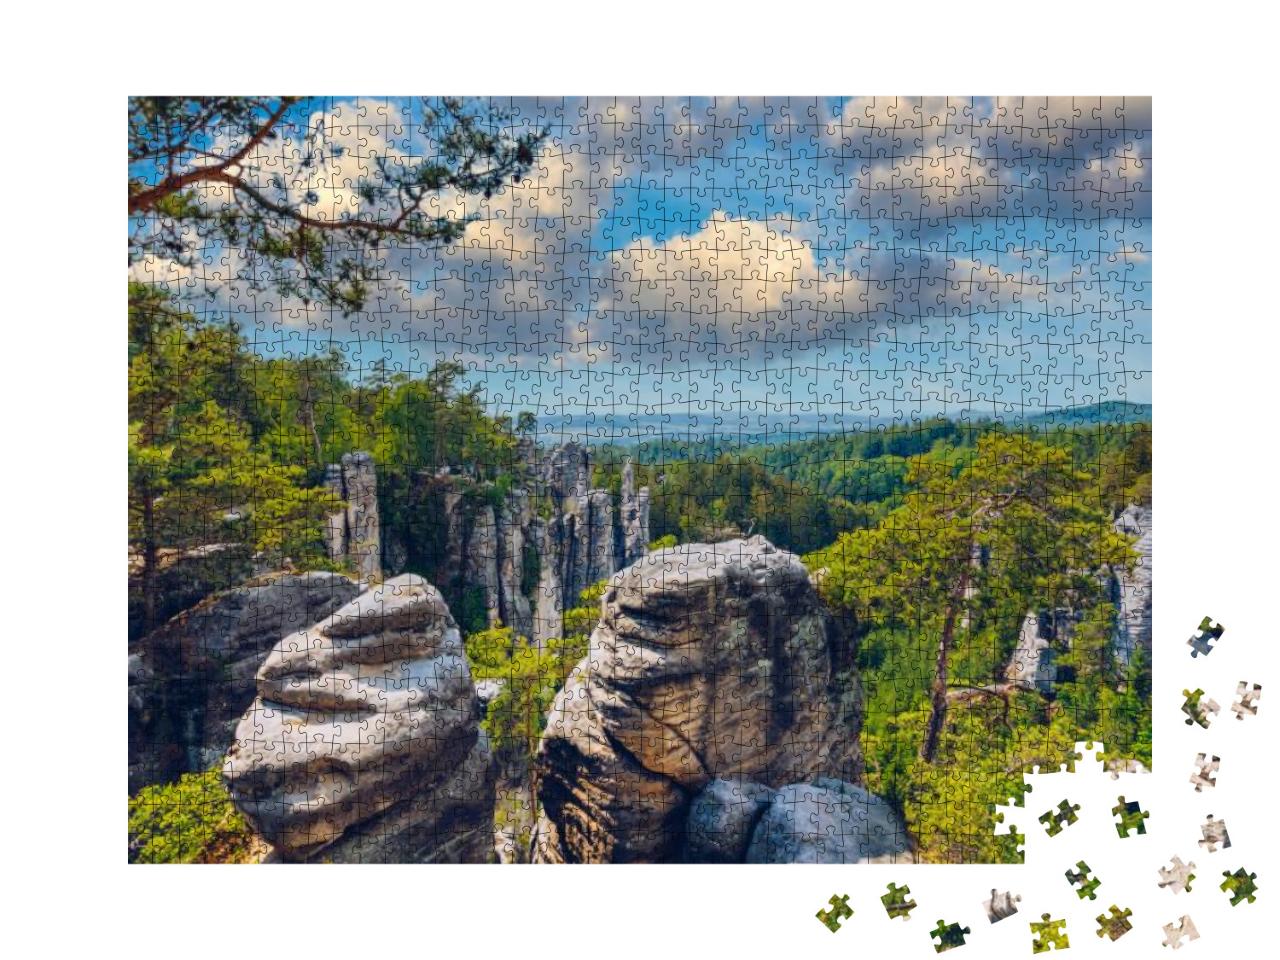 Prachov Rocks Prachovske Skaly in Cesky Raj Region, Czech... Jigsaw Puzzle with 1000 pieces